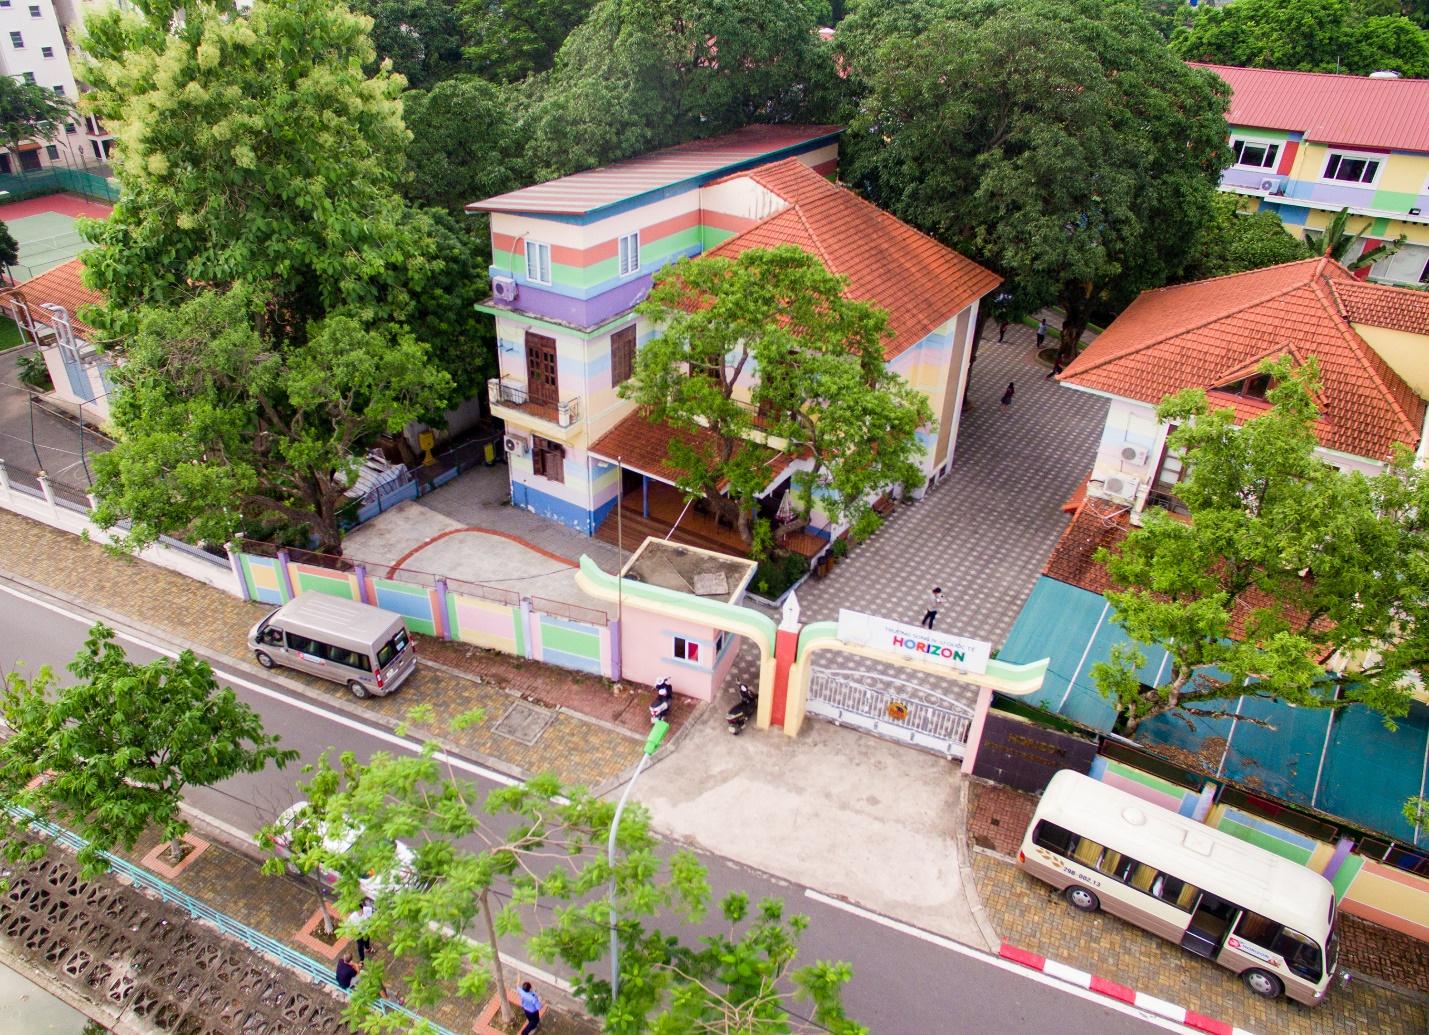 Quận ít dân nhất TP Hồ Chí Minh lại sở hữu nhiều trường quốc tế nhất: Gần 20 “trường quý tộc” trên mọi góc phố, phụ huynh 